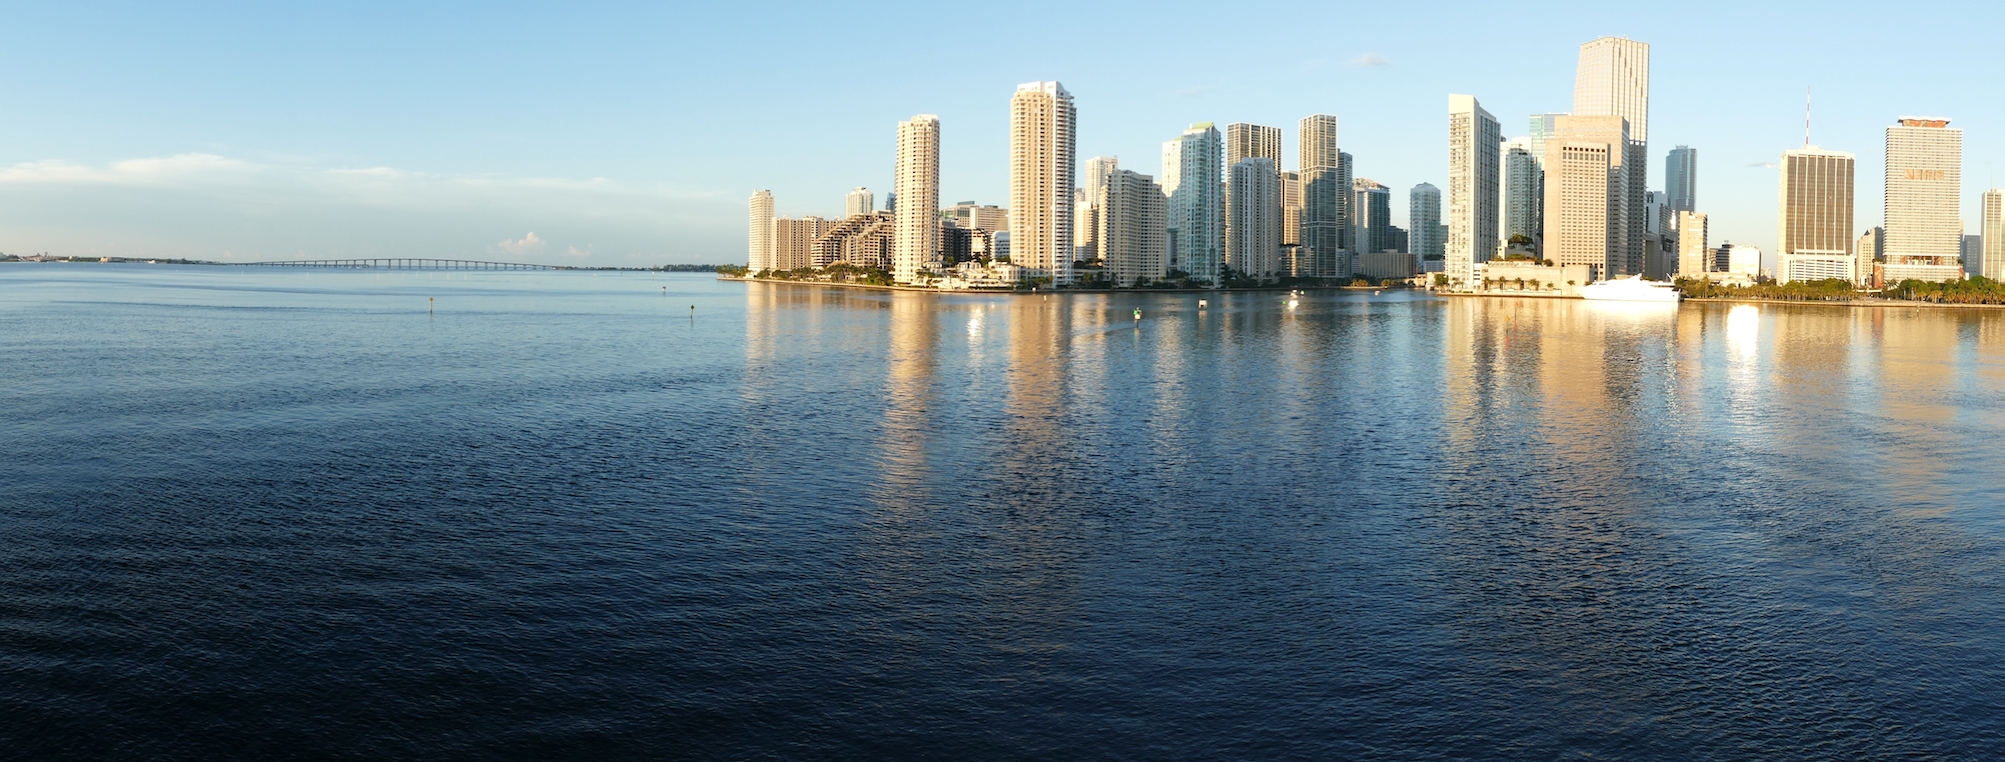 Miami in der Abendsonne